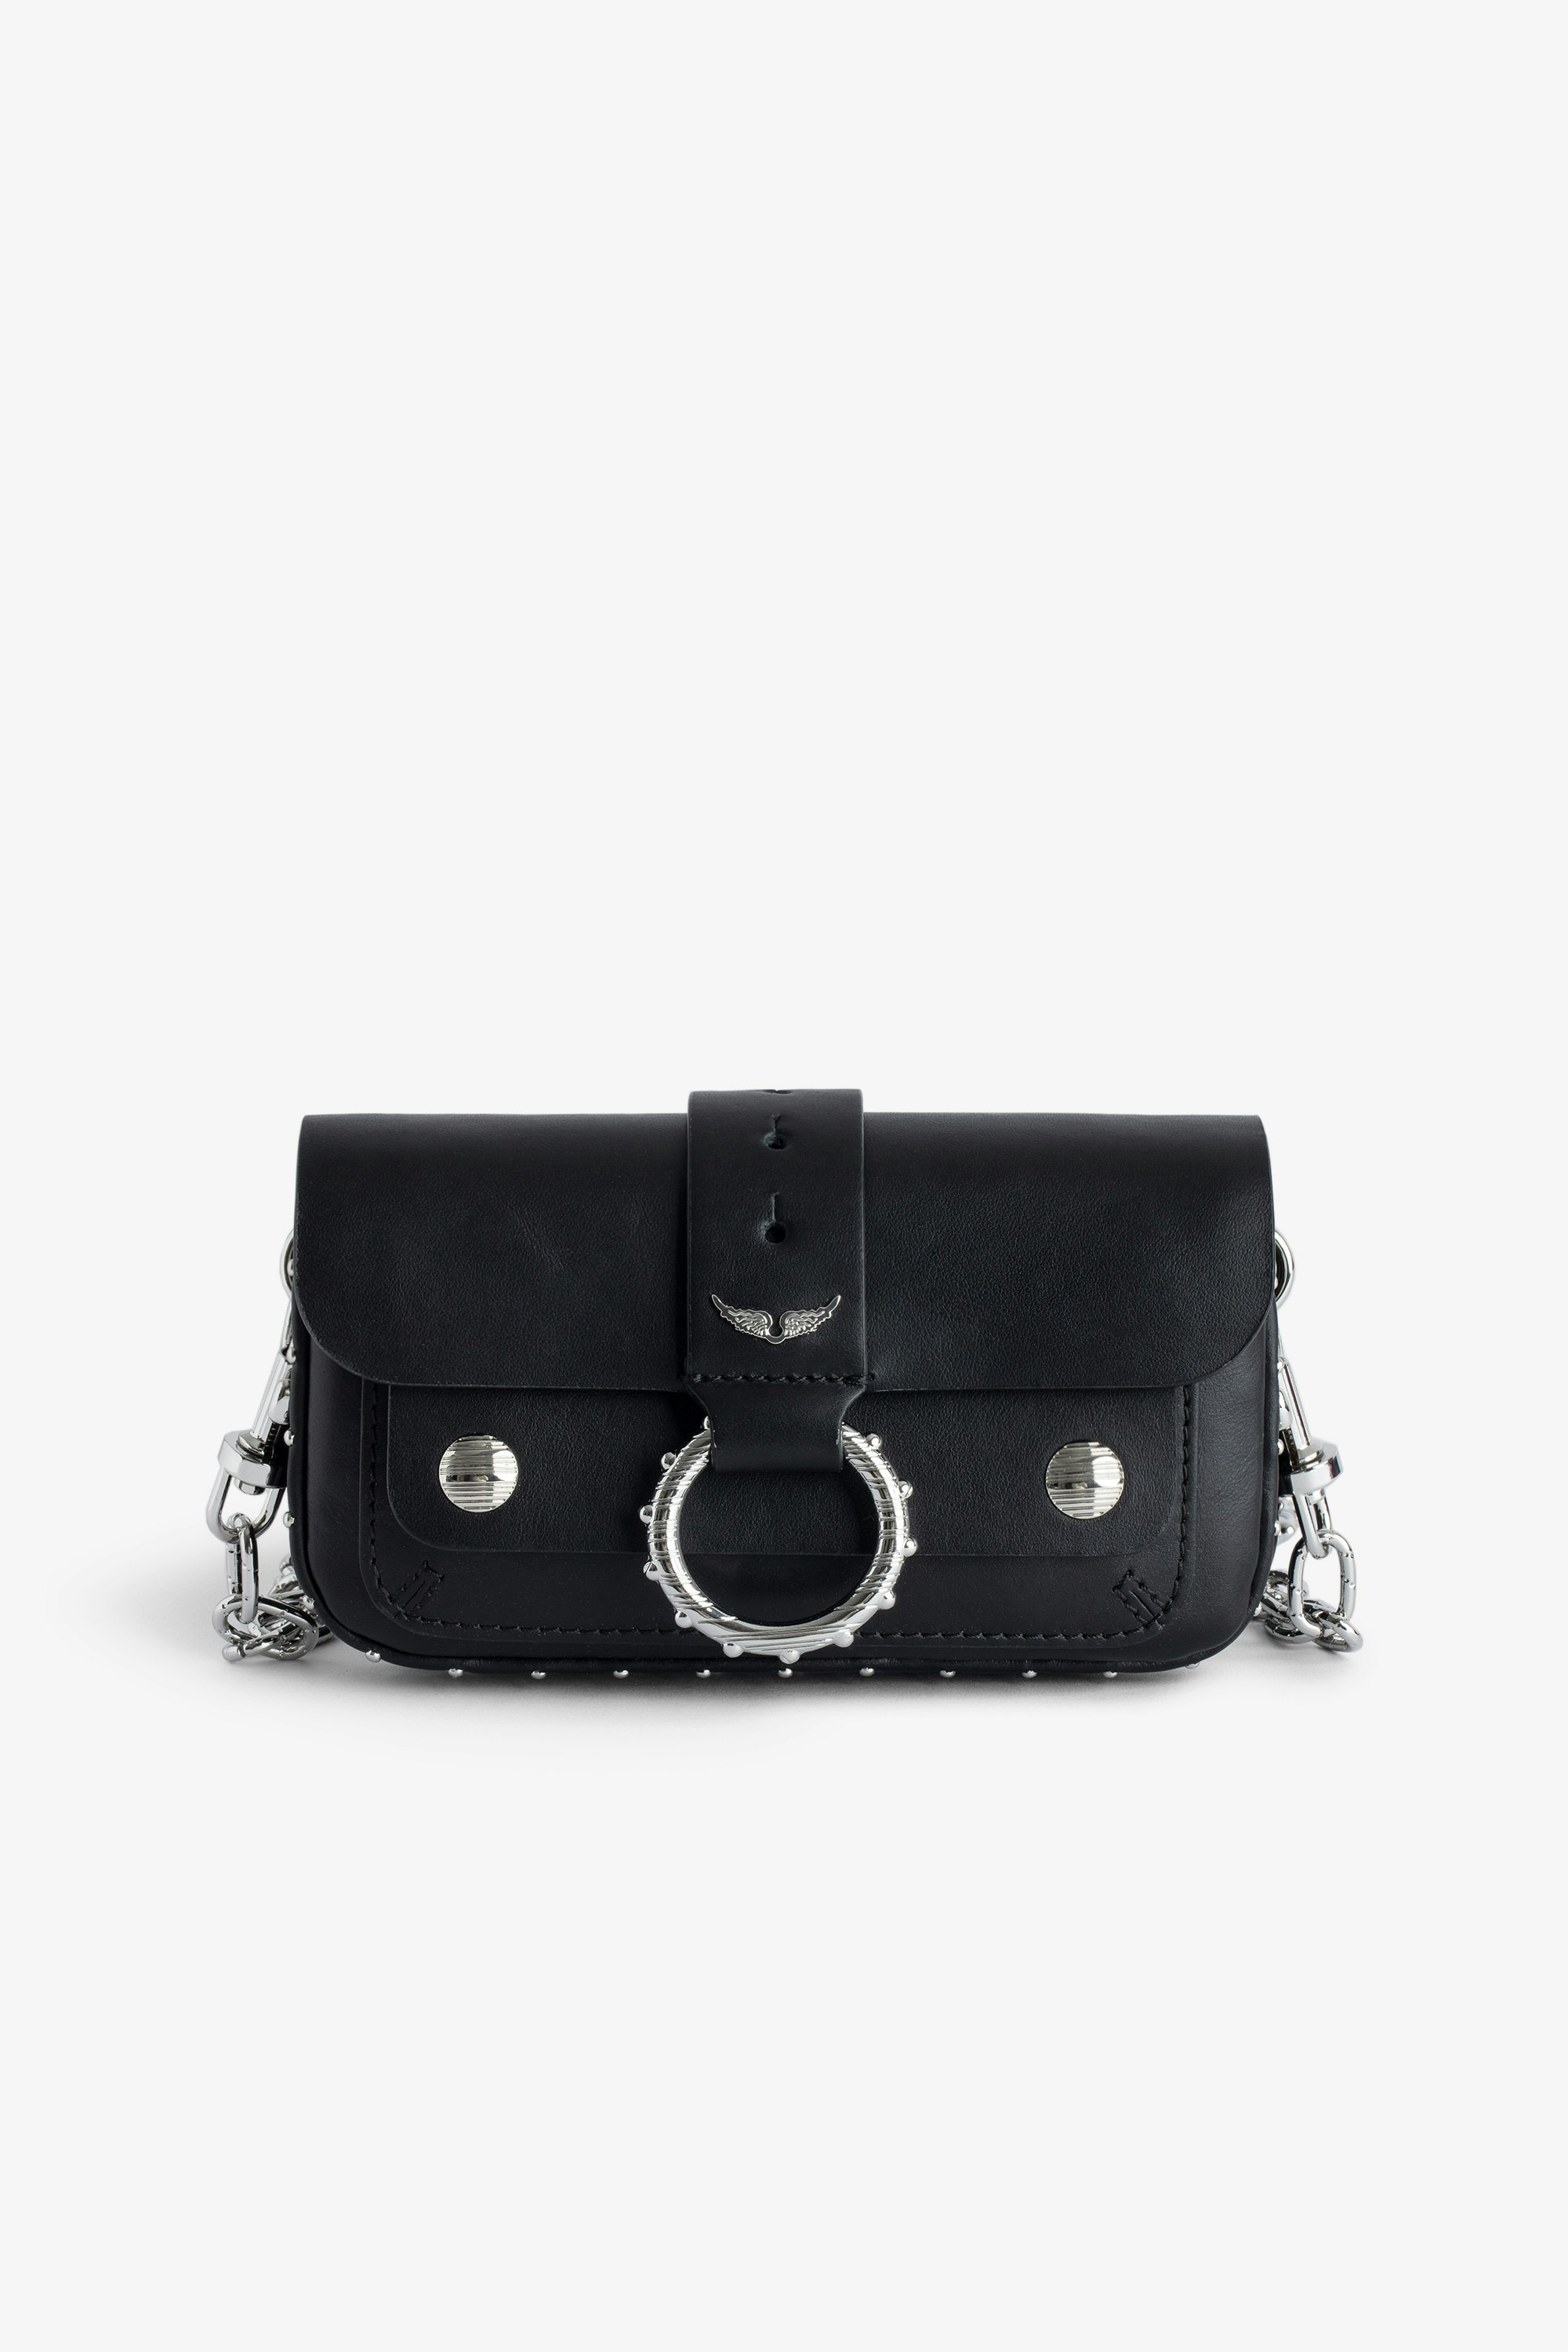 Sac Kate Wallet - Mini sac en cuir lisse noir à anneau et chaîne en métal.